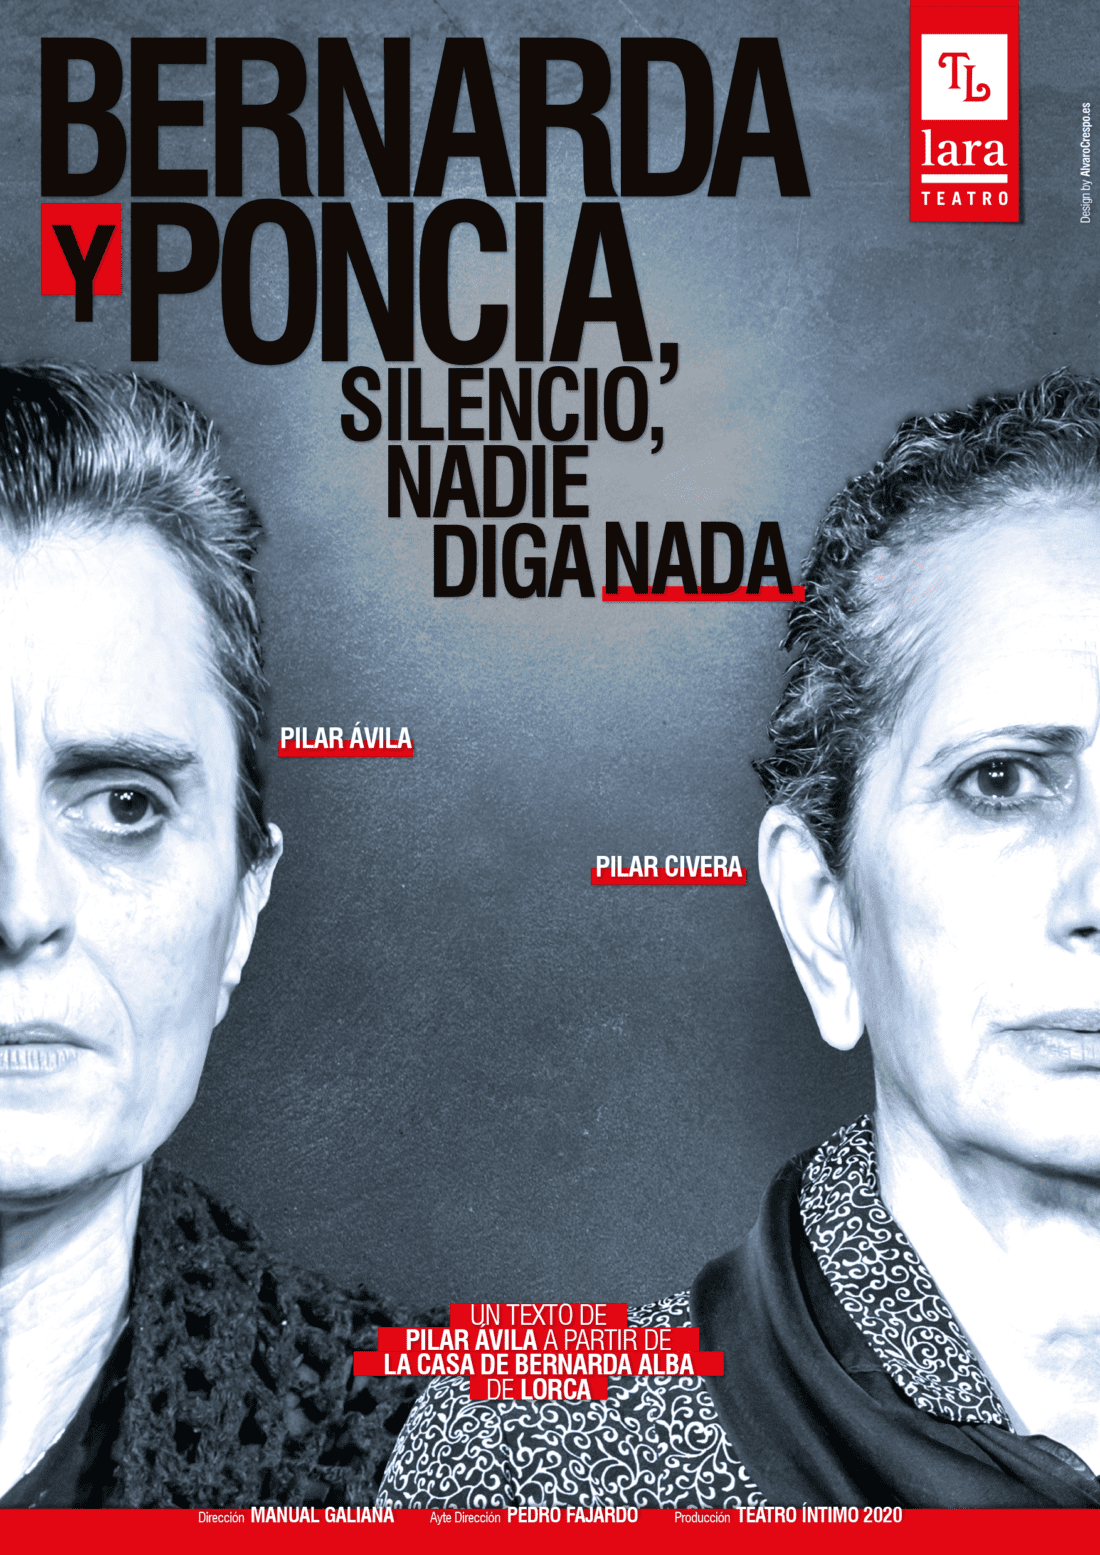 Bernarda y Poncia (silencio, nadie diga nada) → Teatro Lara